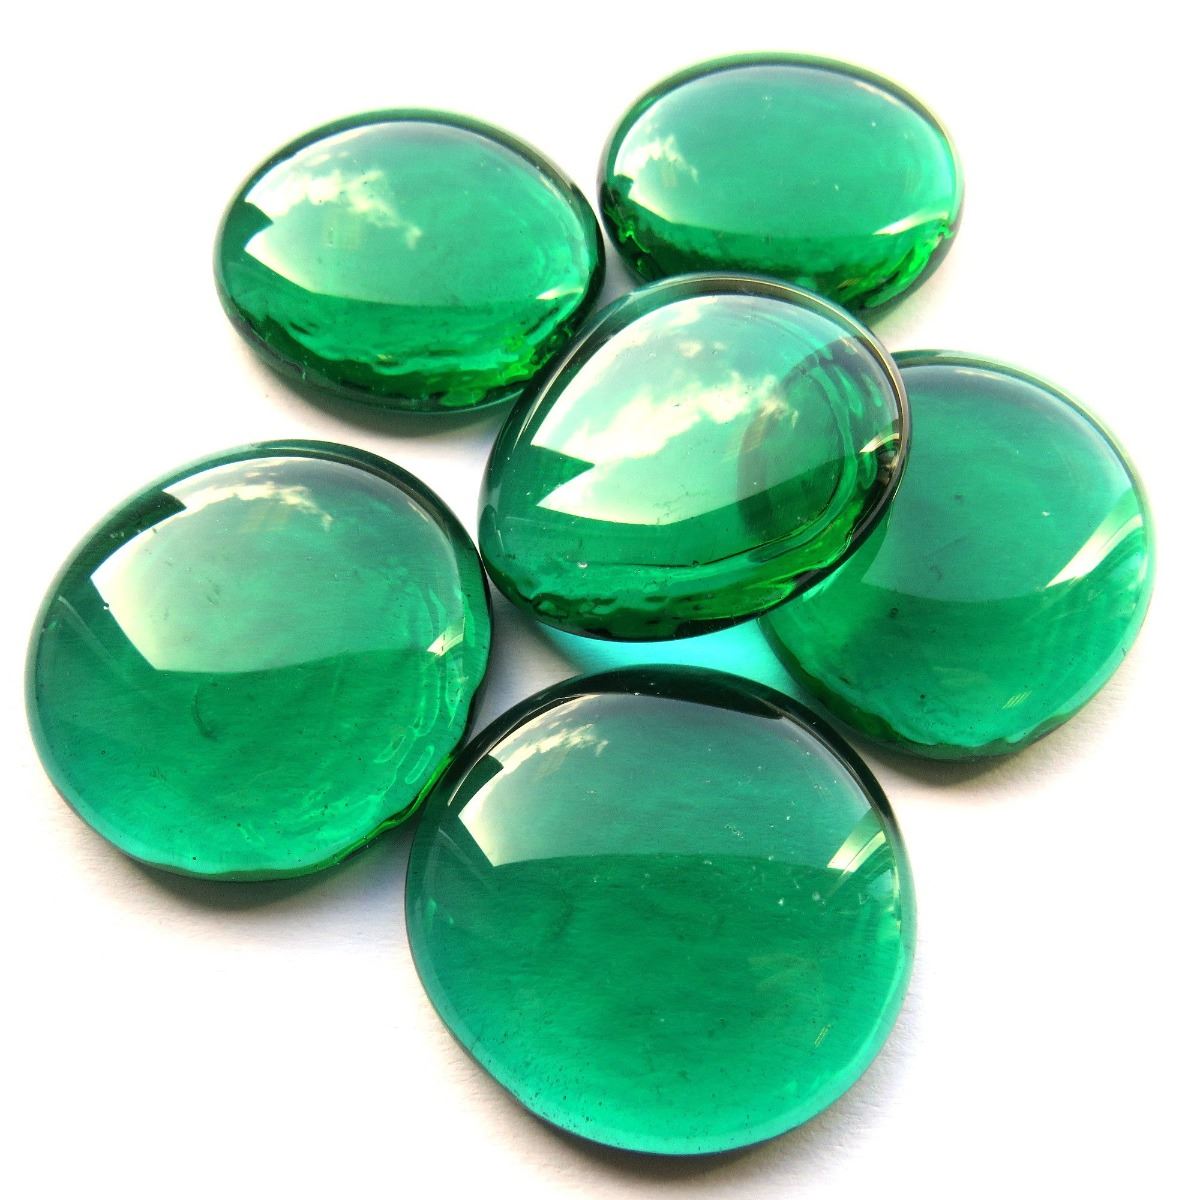 XL Gems - Emerald Crystal